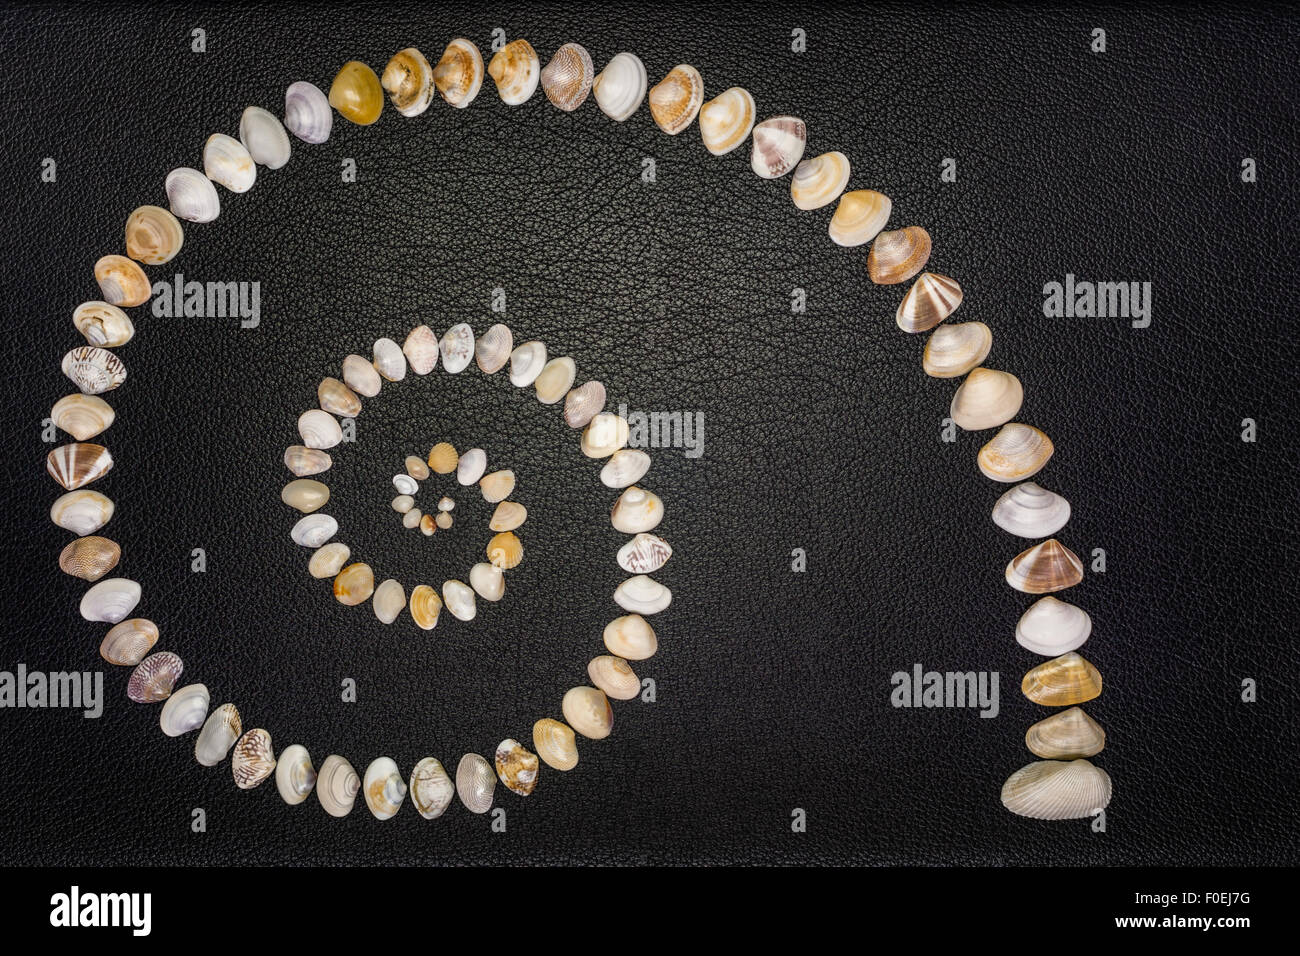 Un concetto di diversità utilizzando clam conchiglie di varie dimensioni, forme, modelli e colori disposti come nautilus conchiglia la curva di crescita. Foto Stock